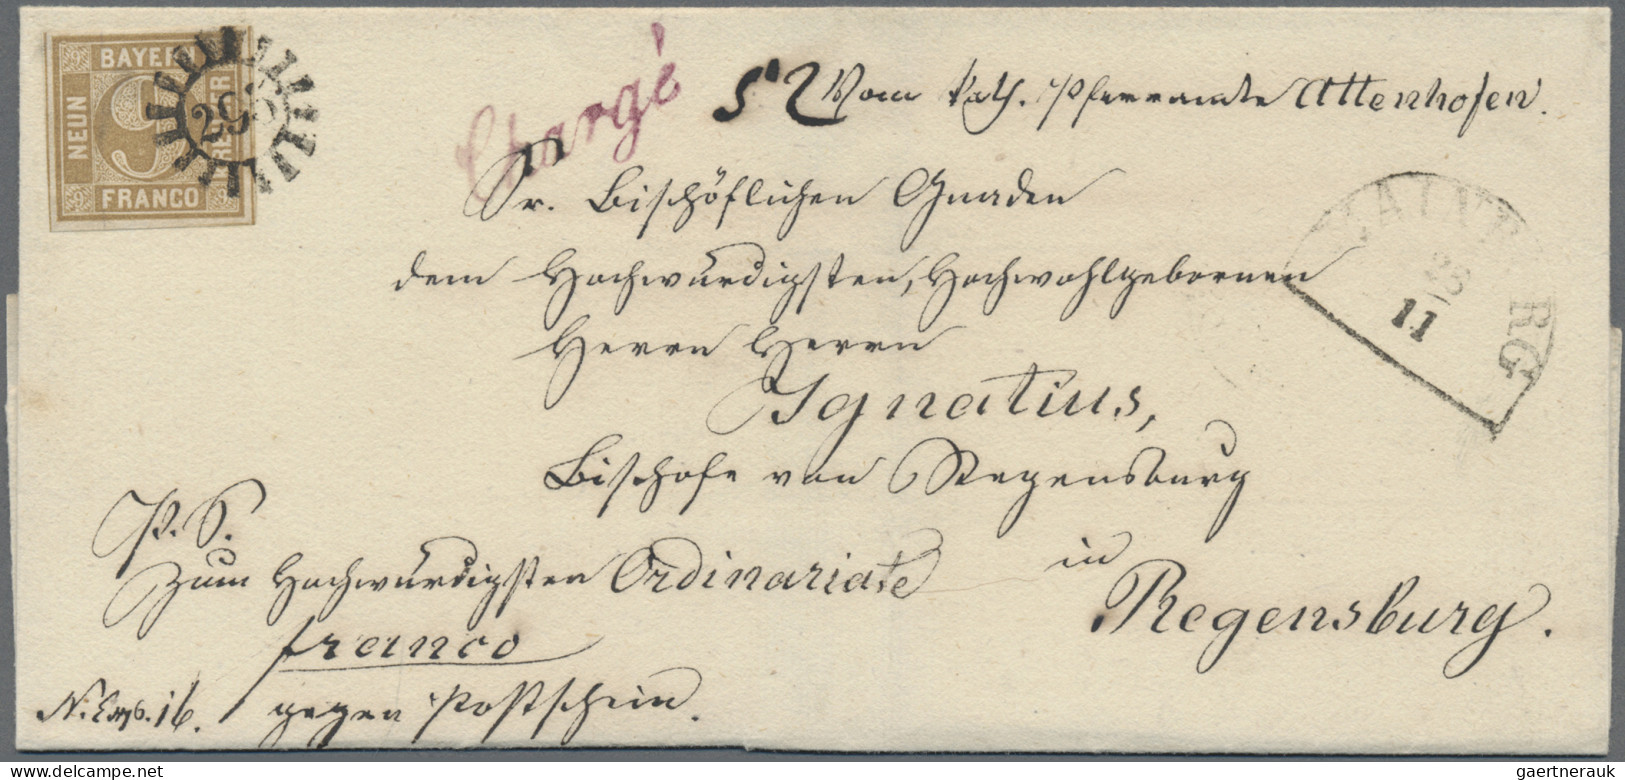 Bayern - Marken Und Briefe: 1862, 9 Kreuzer Ockerbraun, Entwertet Mit Geschlosse - Other & Unclassified